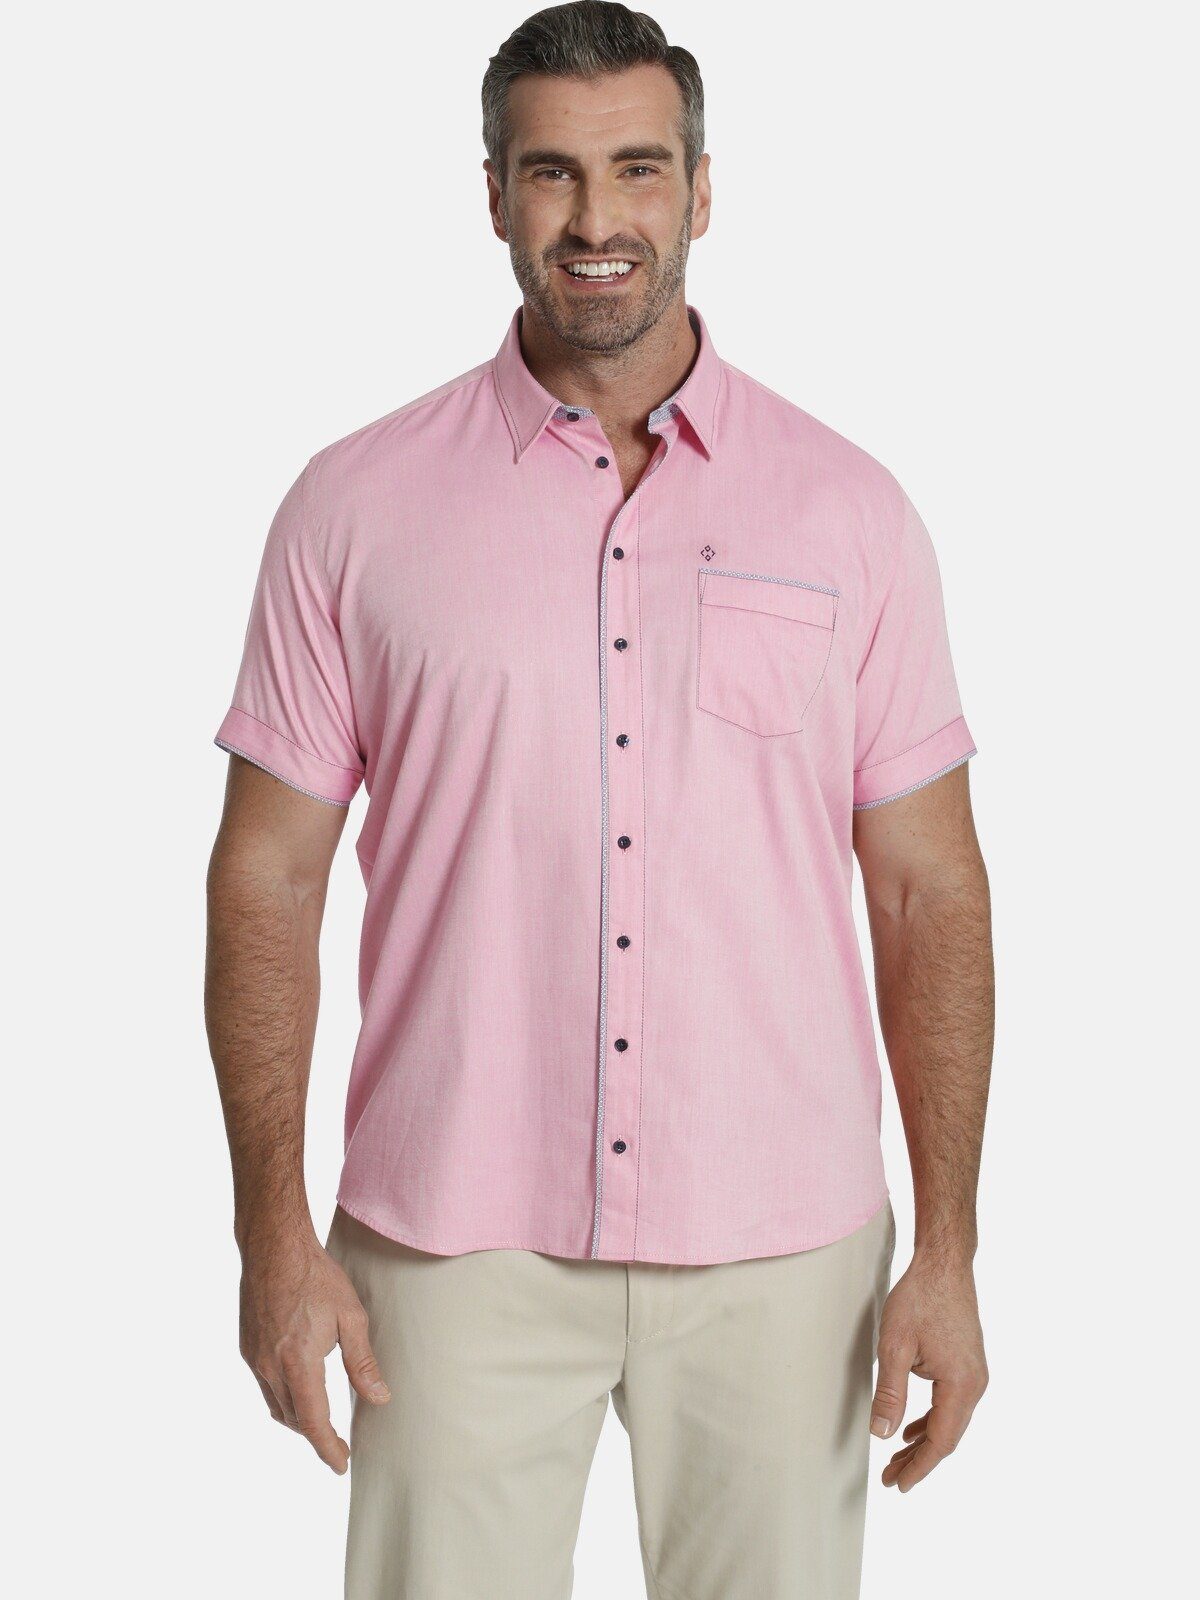 Rosa Hemden online kaufen » Pinkes Hemd | OTTO